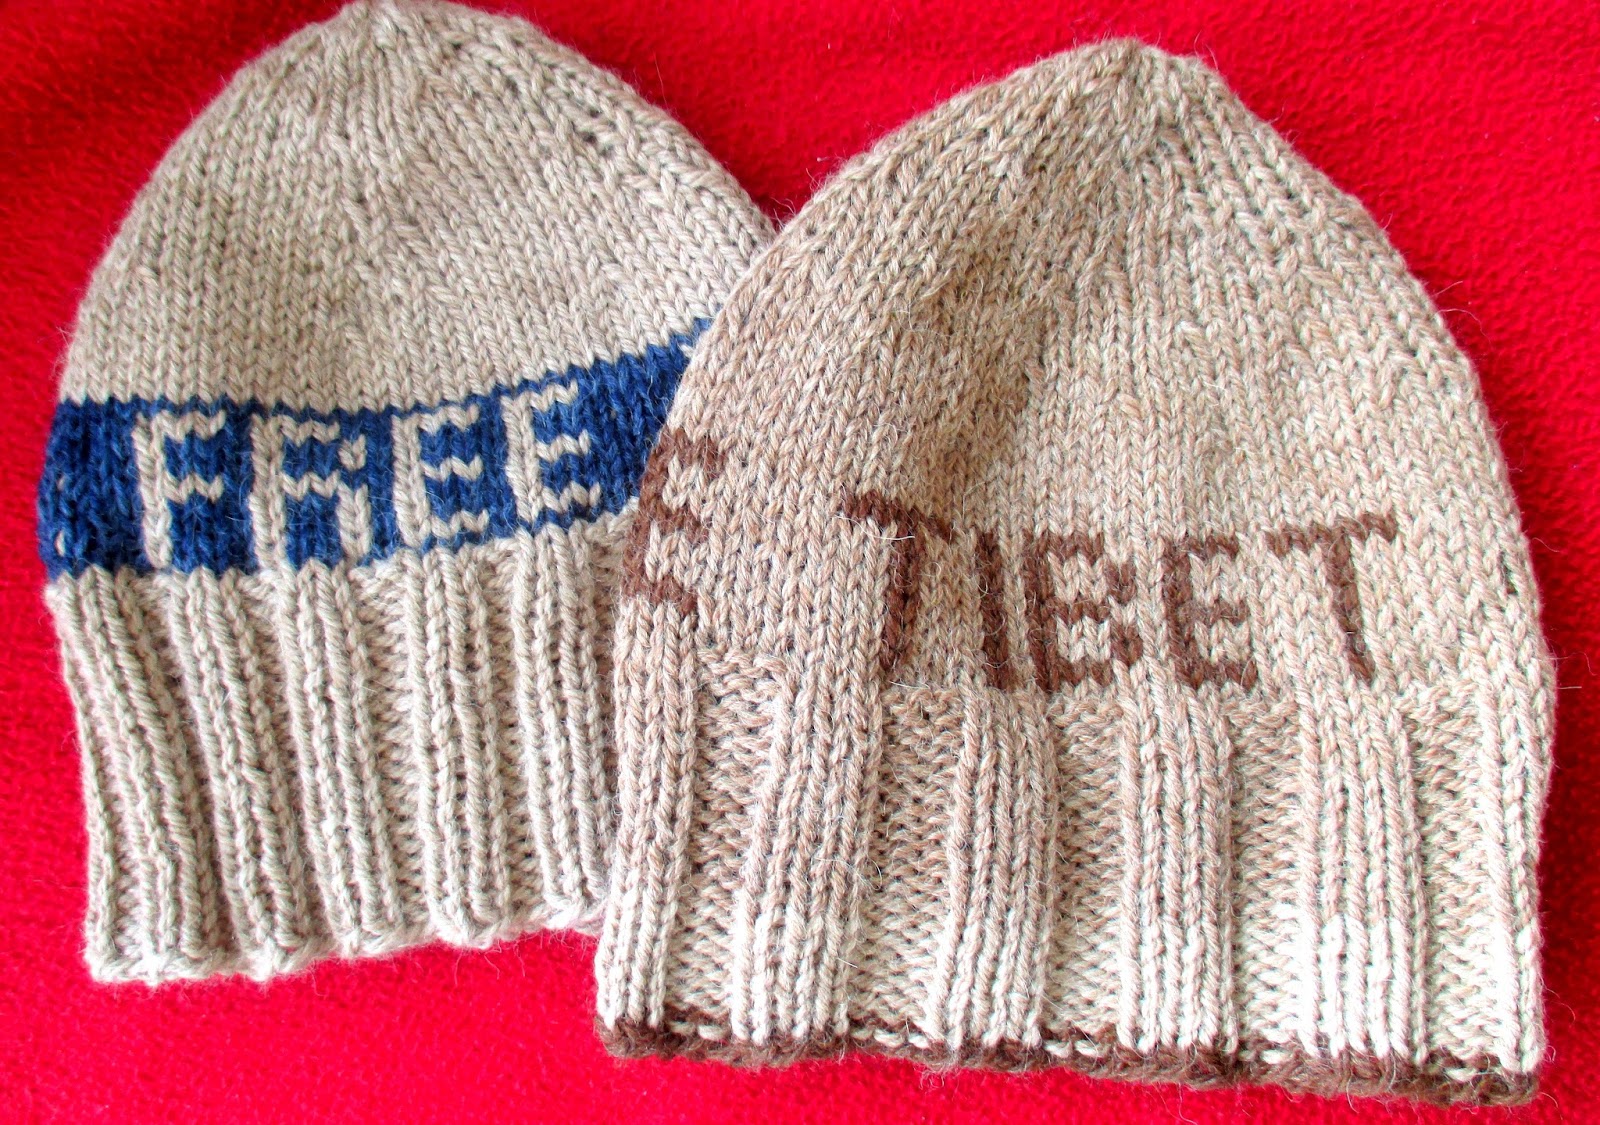 Hæklehexen : "Free Tibet" varme huer til hjemløse på Hjemløsedagen den 17. oktober. Andre kan godt gå med huen! Se strikkeopskrift i kommentarfelt.